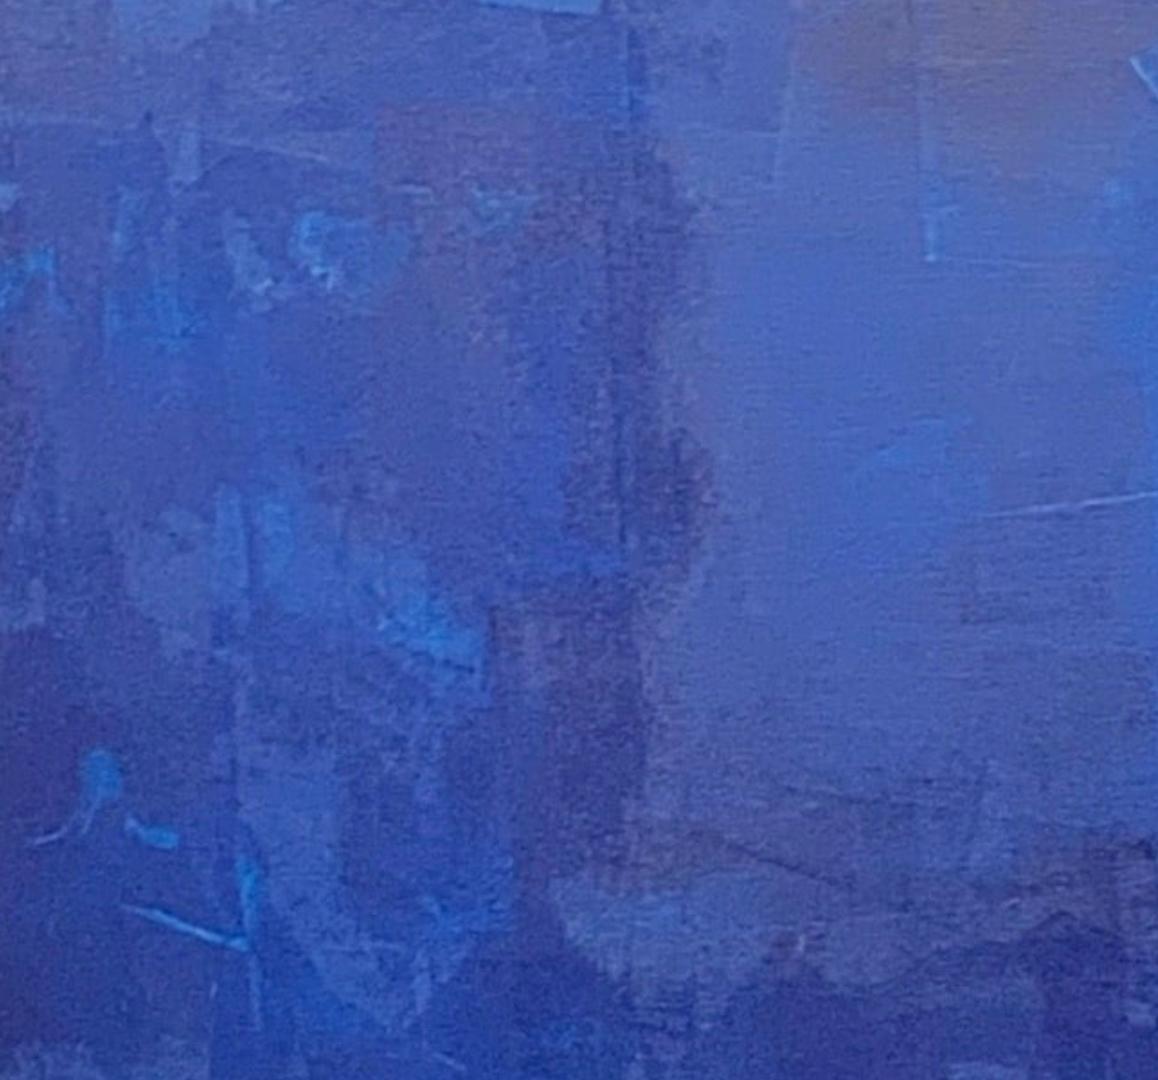 La mer profonde, océan contemporain, bleu foncé, essence de l'océan, art de Floride - Impressionnisme abstrait Painting par Juanita Bellavance 